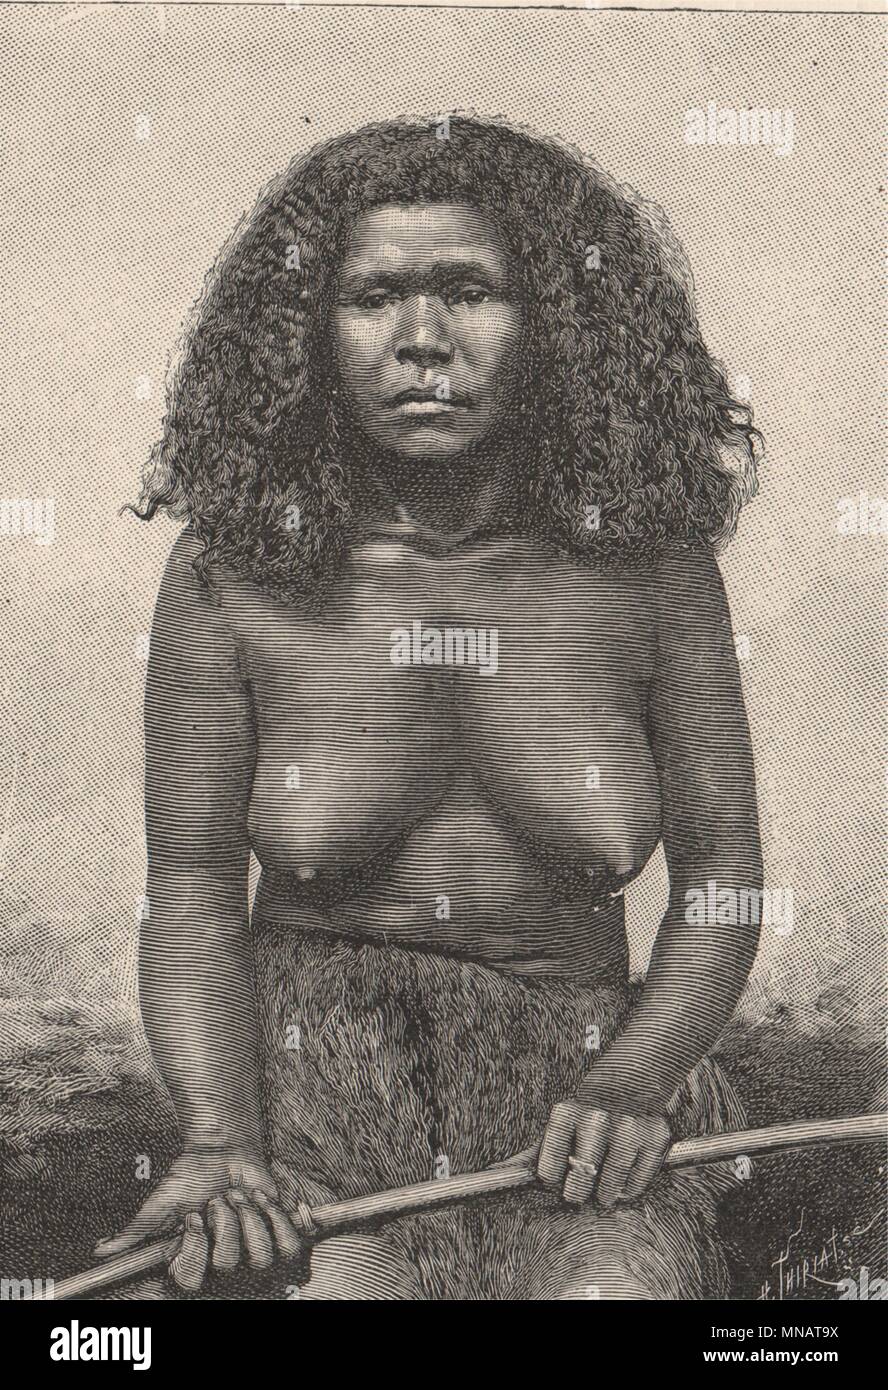 Nativo de Maré, lealtad Isles. Nueva Caledonia. Melanesia 1885 antigüedades imprimir Foto de stock